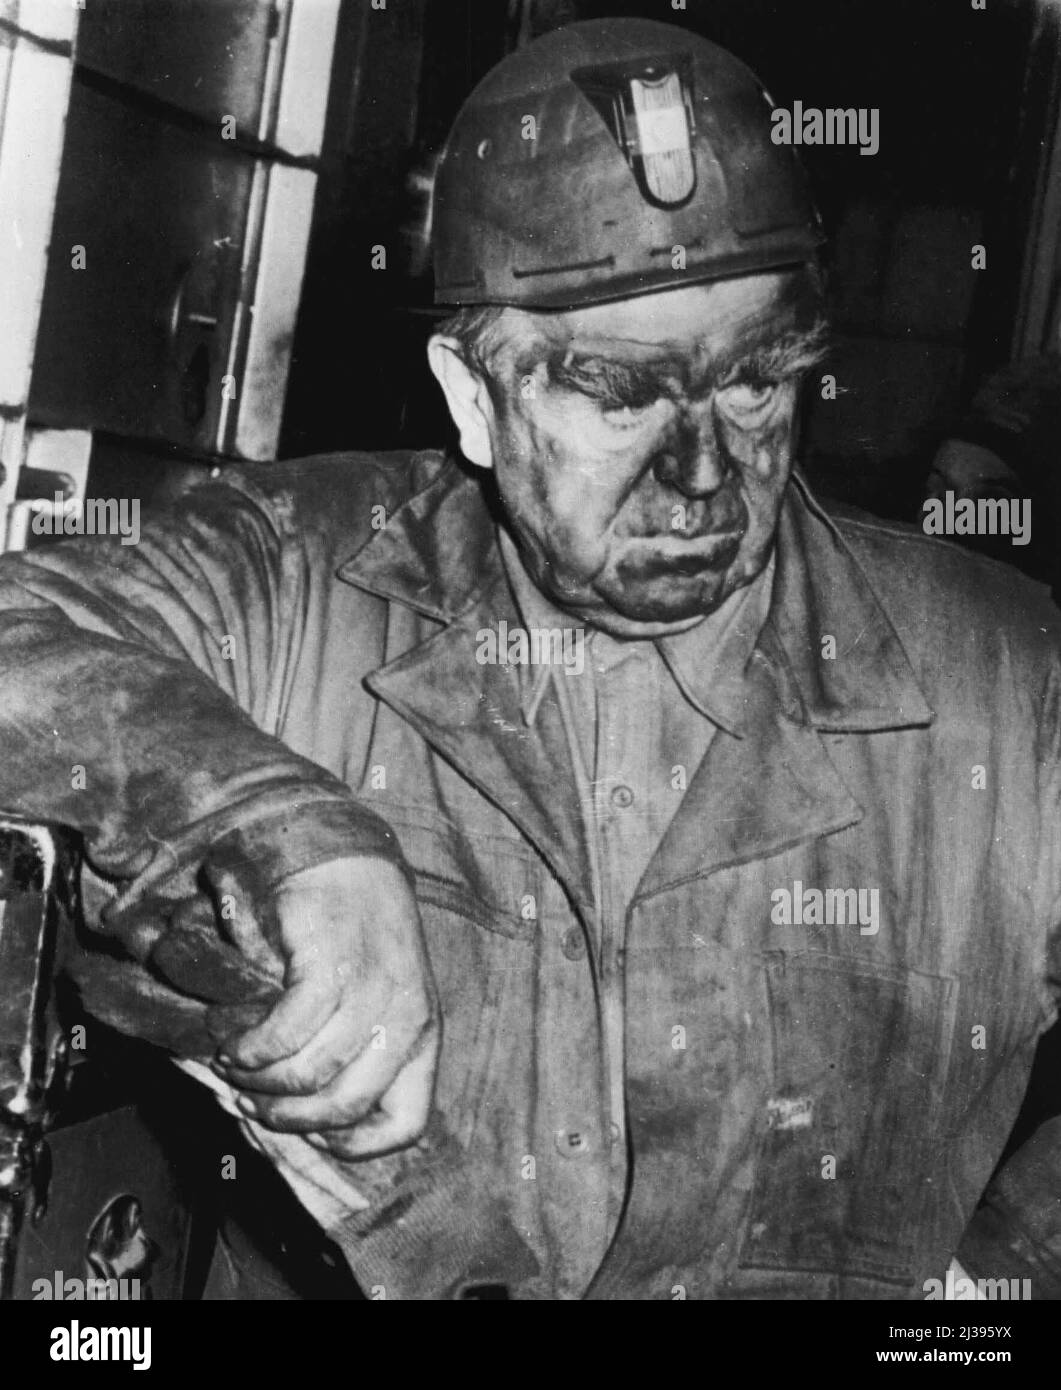 'No Comment' -- John L. Lewis, presidente della United Mine Workers Union, dopo che è emerso da Orient Mine No. 2 ieri, dopo un'ispezione di otto ore di scena di esplosione dove 119 minatori sono stati uccisi. Lewis stanco e sporco ha detto che aveva raggiunto le sue 'proprie conclusioni definite', ma non avrebbe fatto ulteriori commenti. Dicembre 27, 1951. (Foto di AP Wirephoto). Foto Stock